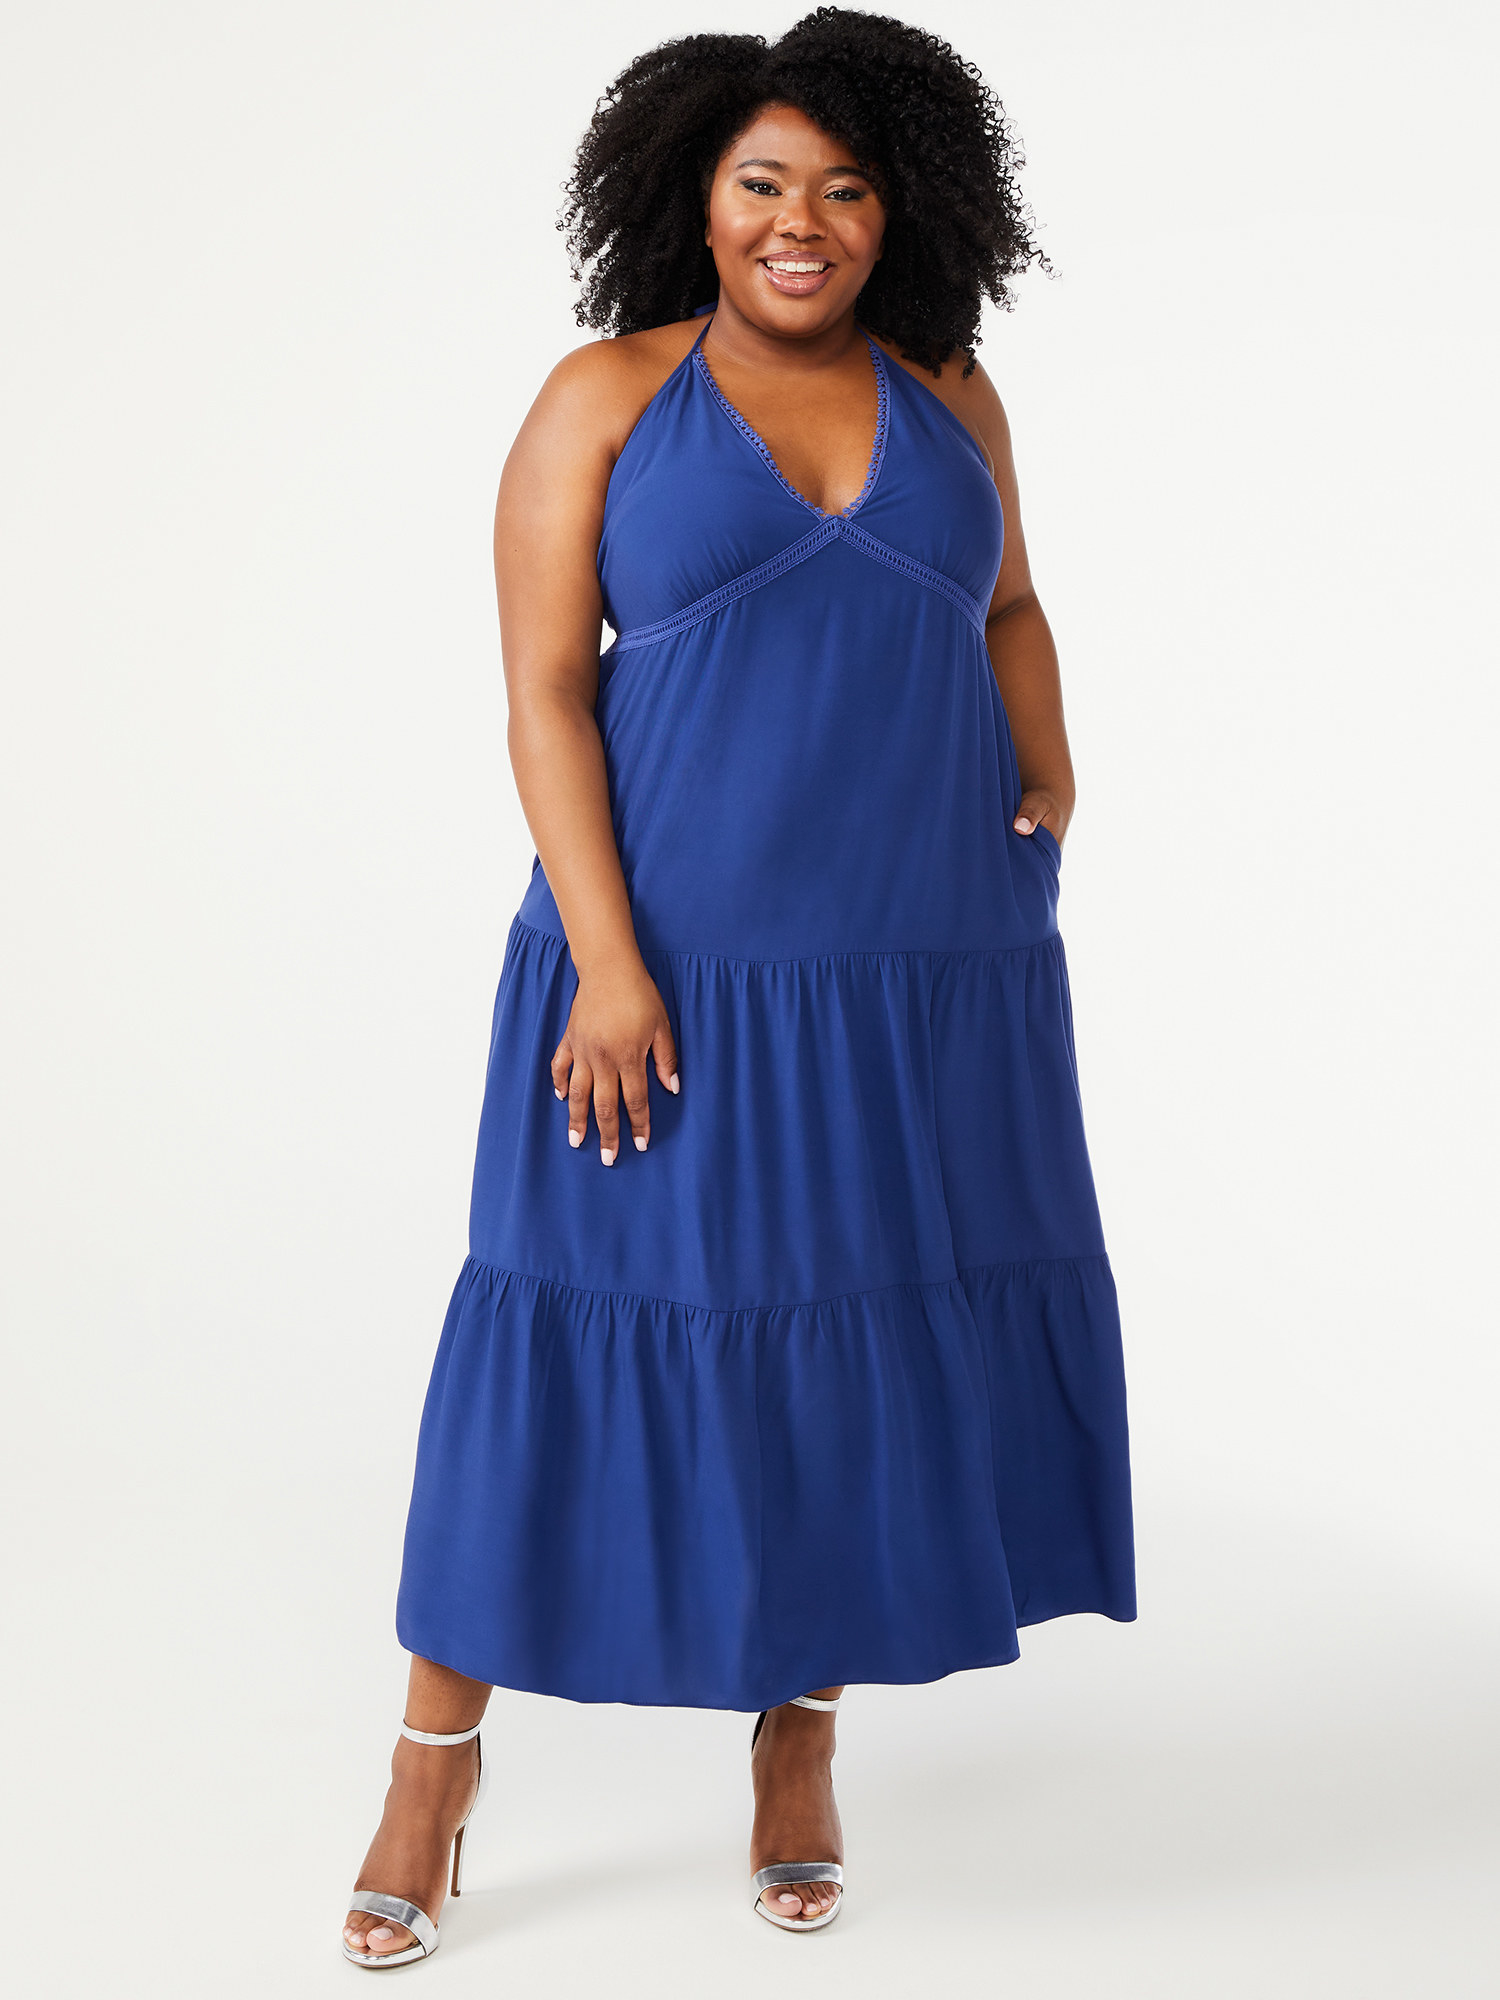 Model wearing the blue dress